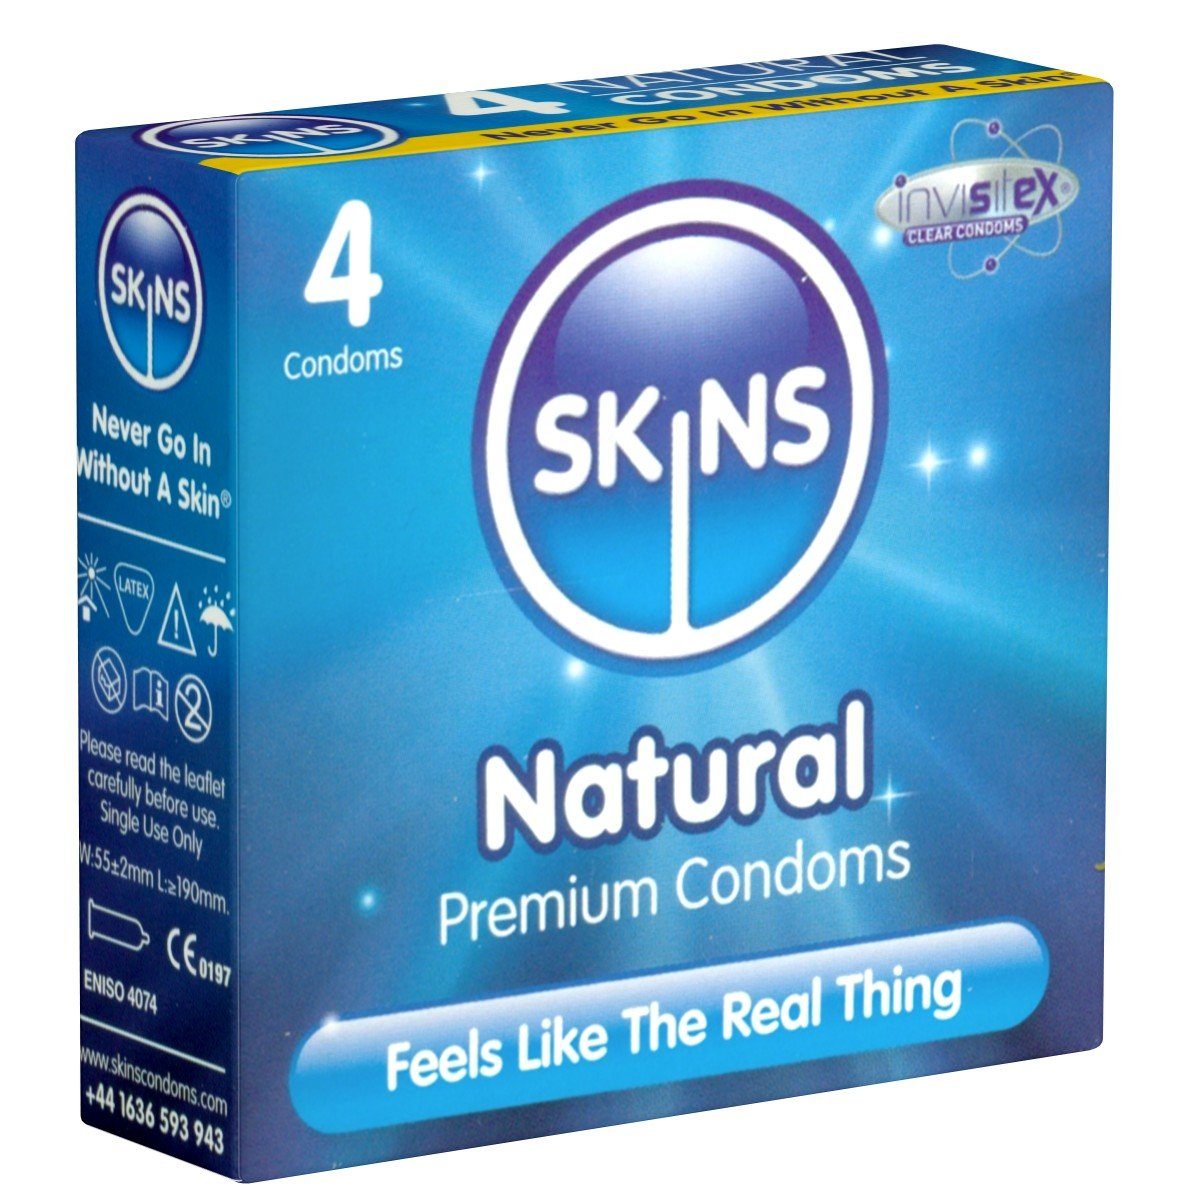 SKINS Condoms Kondome Natural, samtweiche Oberfläche, fühlt sich an wie "echt", Packung mit, 4 St., natürliche Kondome mit Vanille-Duft, durchsichtiges Latex (kristallklar), kein Latexgeruch